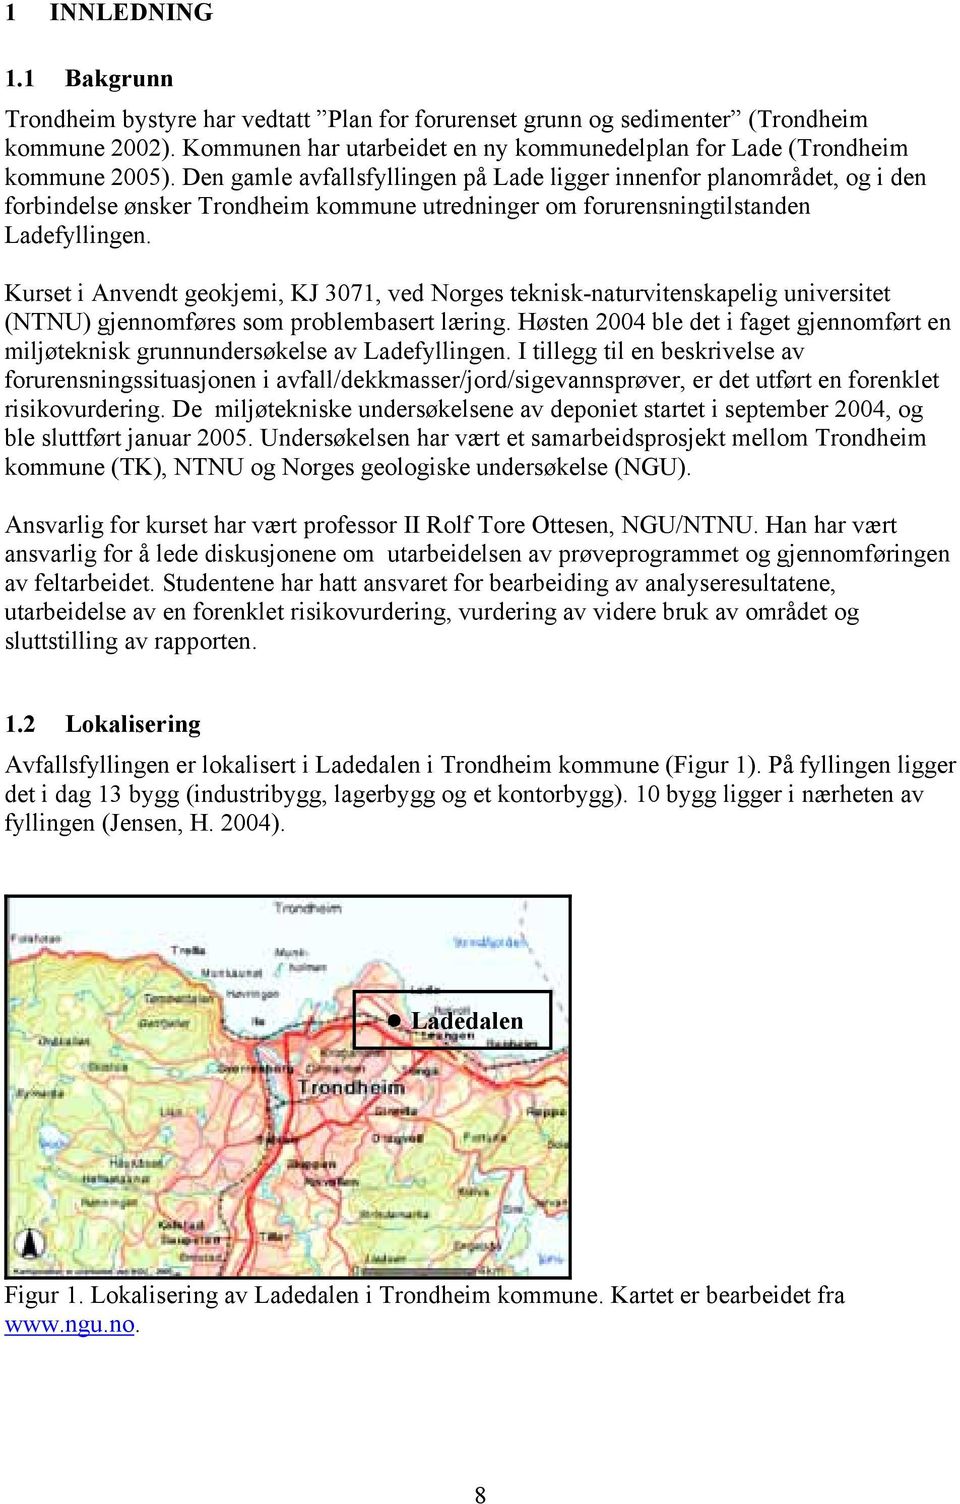 Den gamle avfallsfyllingen på Lade ligger innenfor planområdet, og i den forbindelse ønsker Trondheim kommune utredninger om forurensningtilstanden Ladefyllingen.